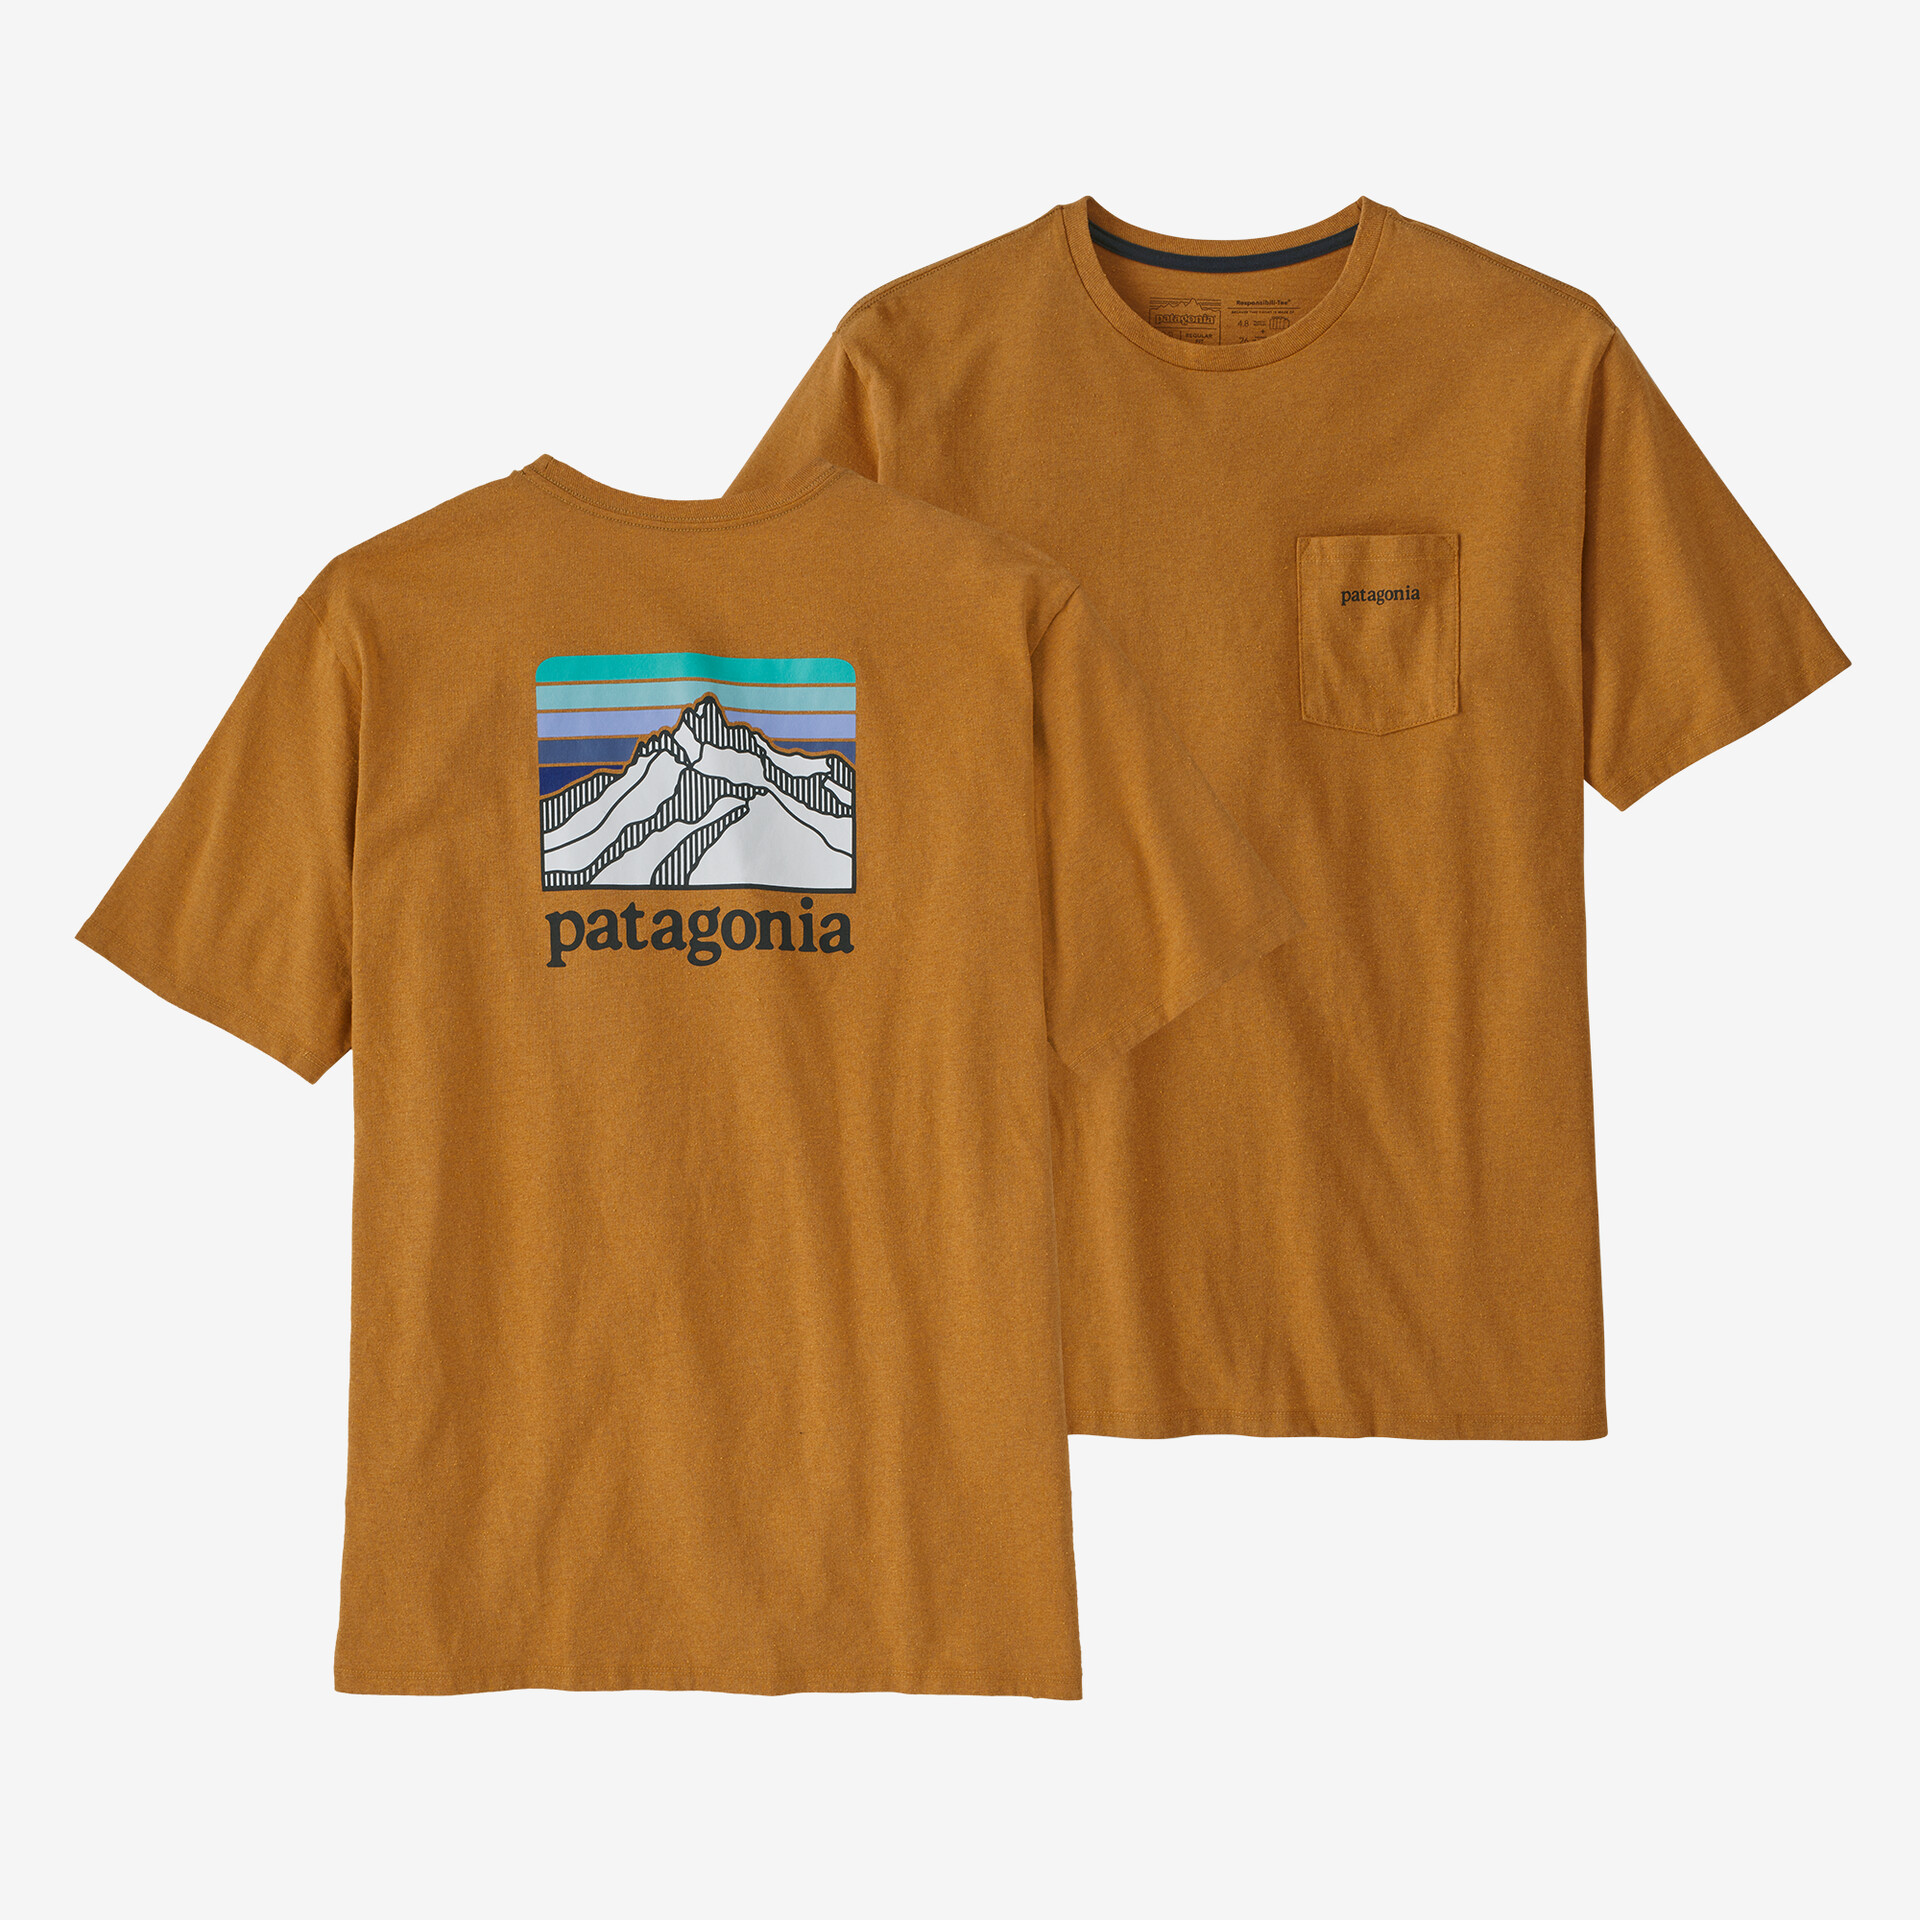 Мужская ответственная футболка с логотипом и карманом Patagonia, цвет Dried Mango мужская ответственная футболка с логотипом и карманом patagonia серый